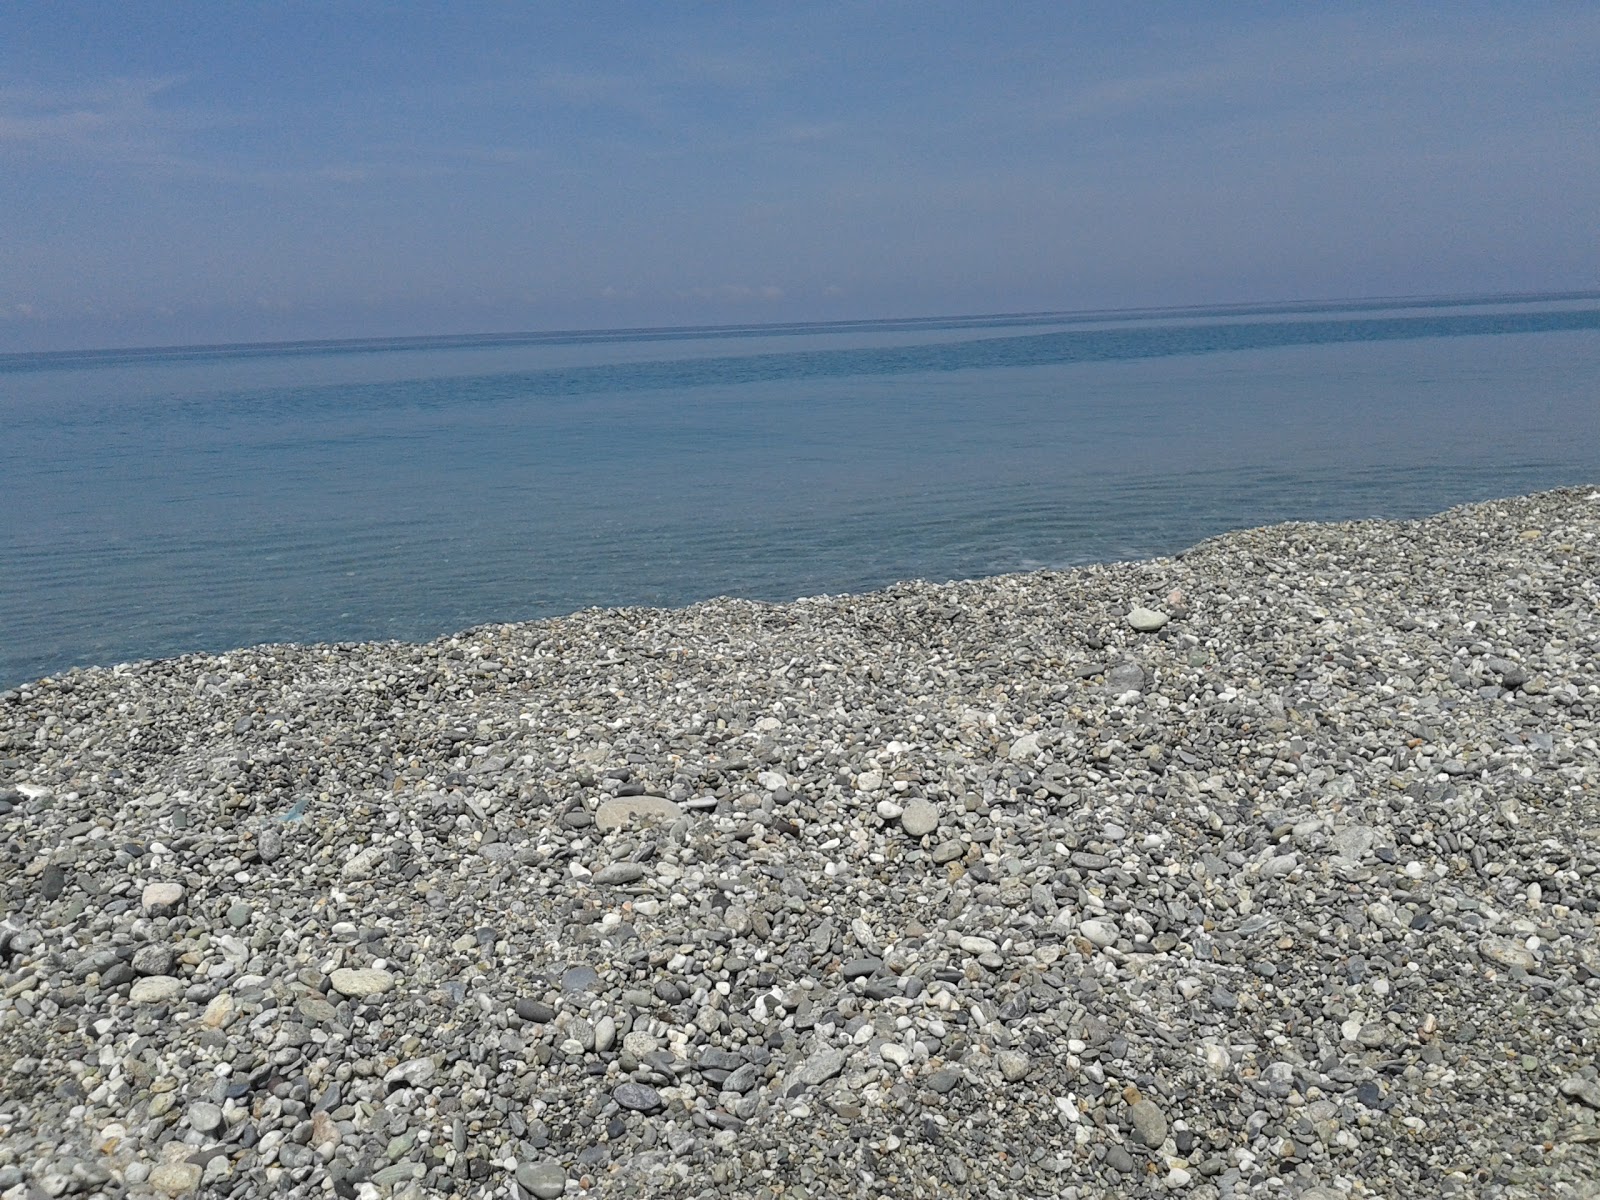 Scaro-Reggio-Scornavacca-Vardano beach'in fotoğrafı mavi sular yüzey ile